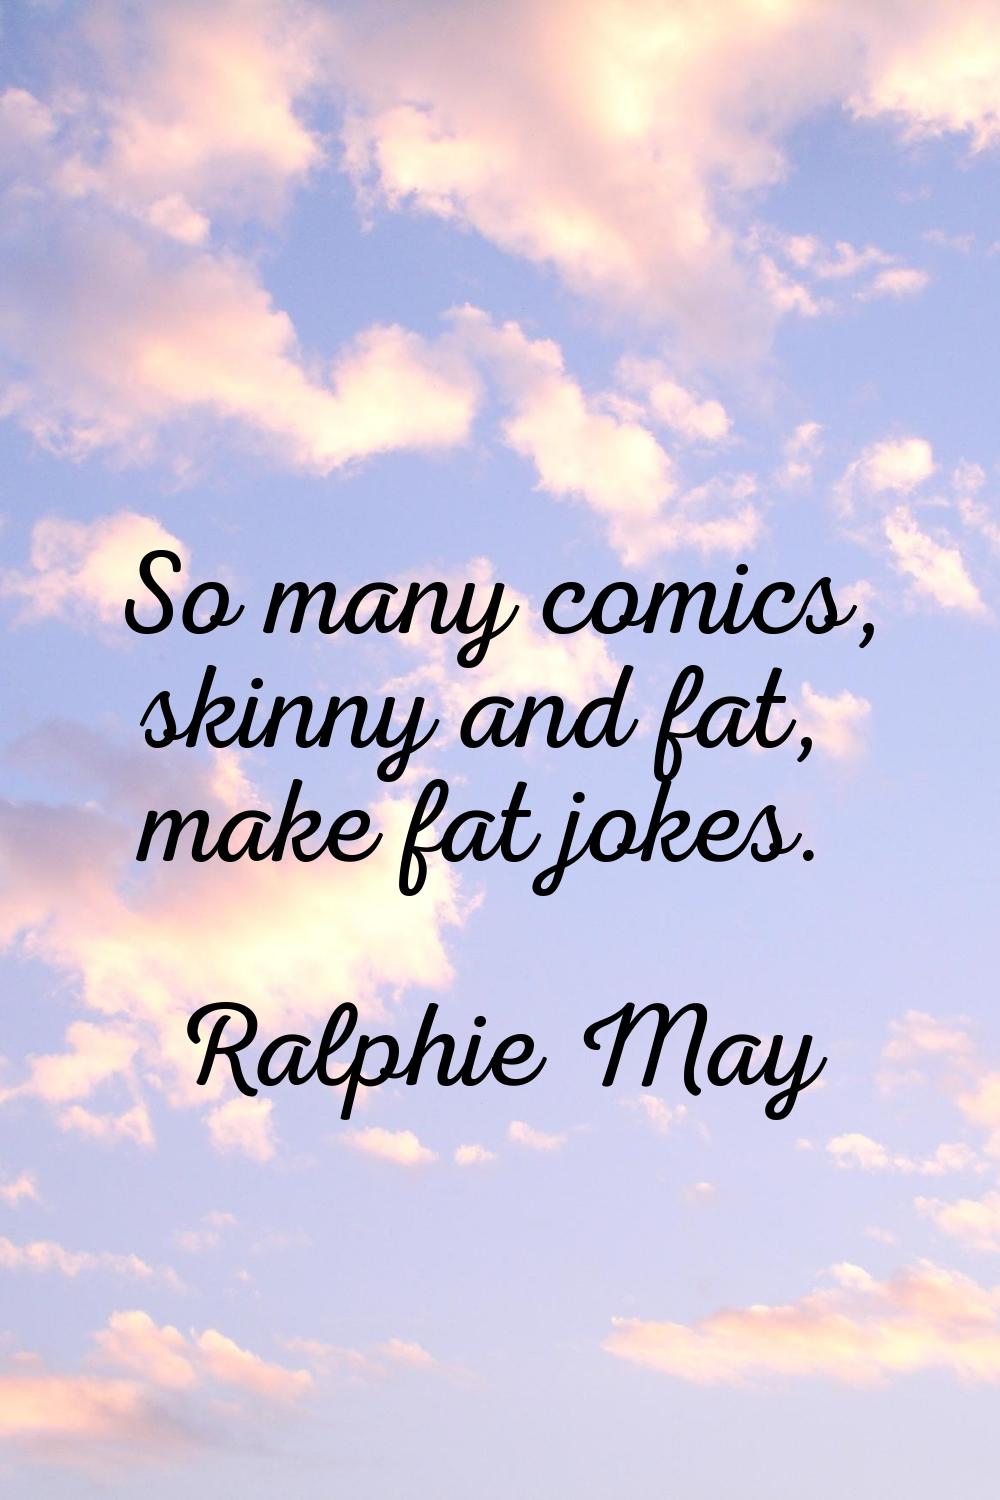 So many comics, skinny and fat, make fat jokes.